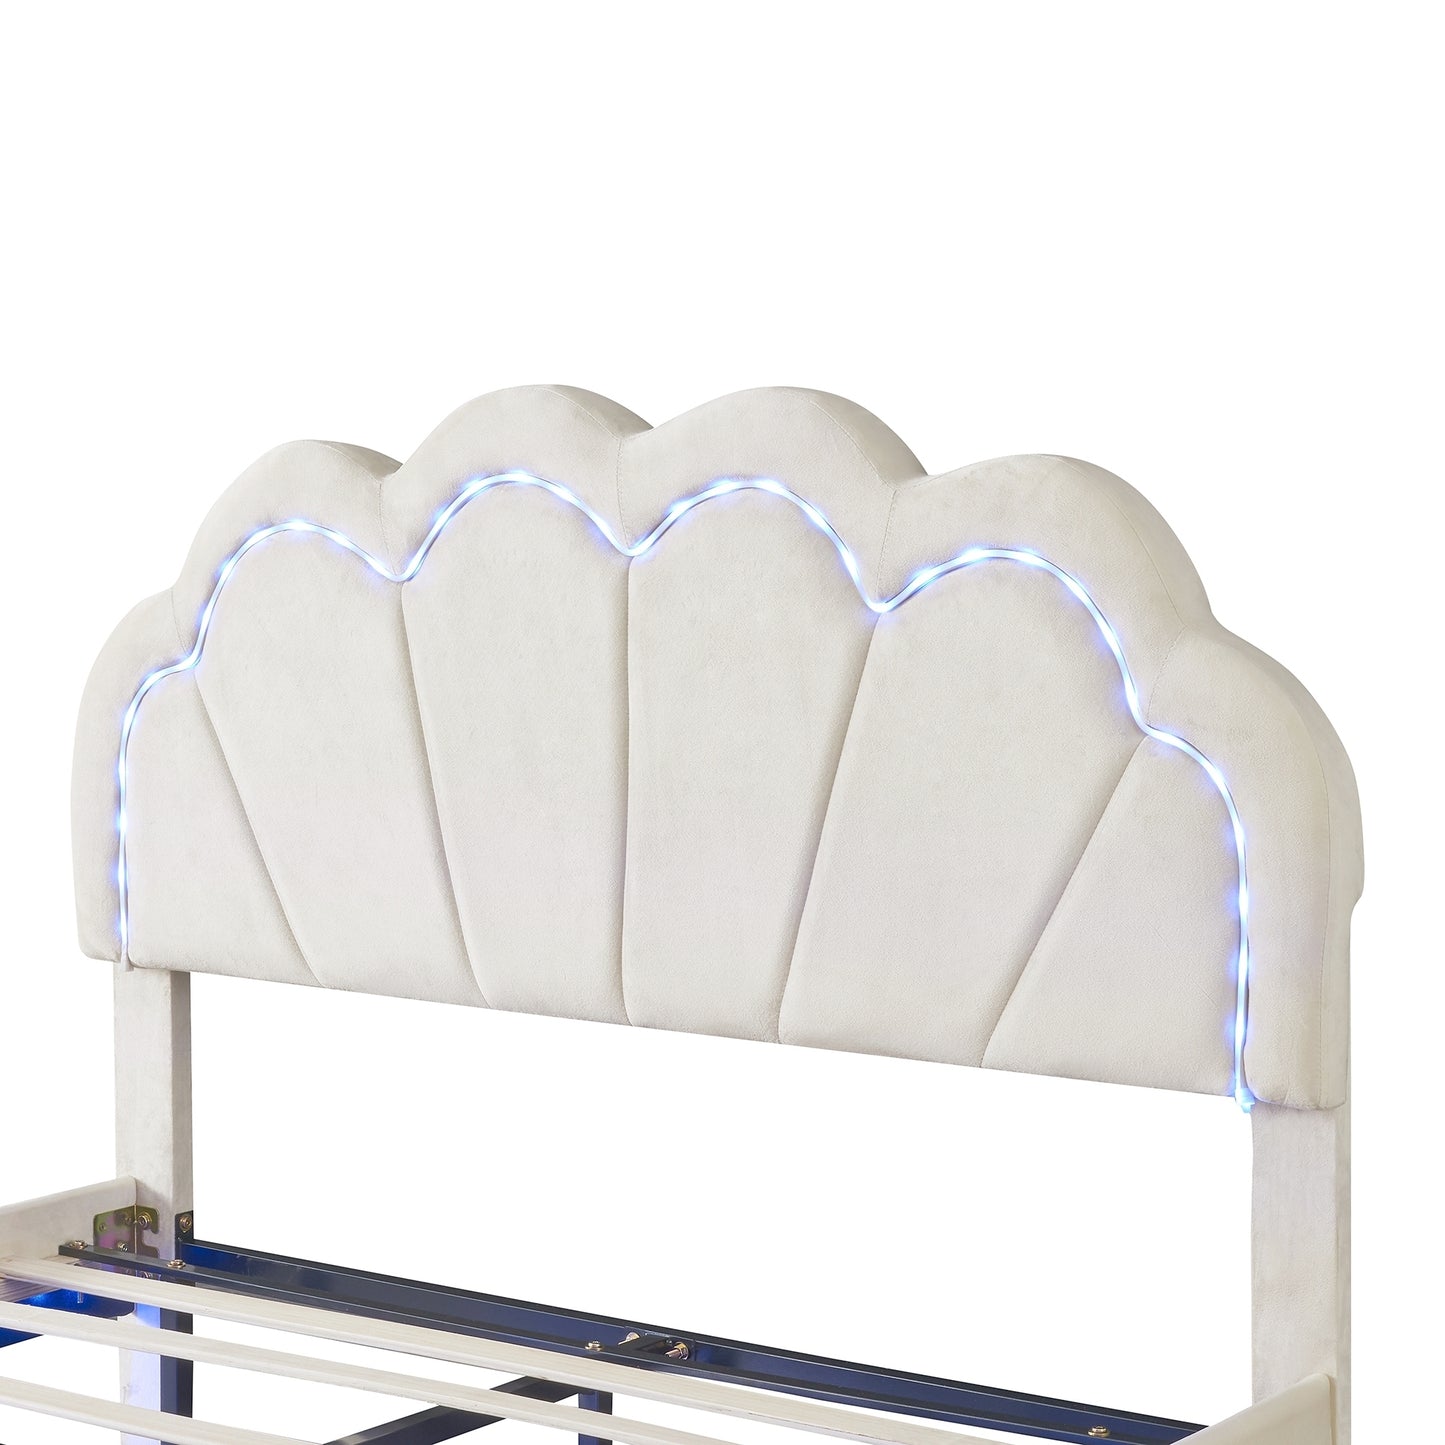 Full Upholstered Smart LED Bed Frame with Elegant Flowers Headboard,Floating Velvet Platform LED Bed with Wooden Slats Support,Beige